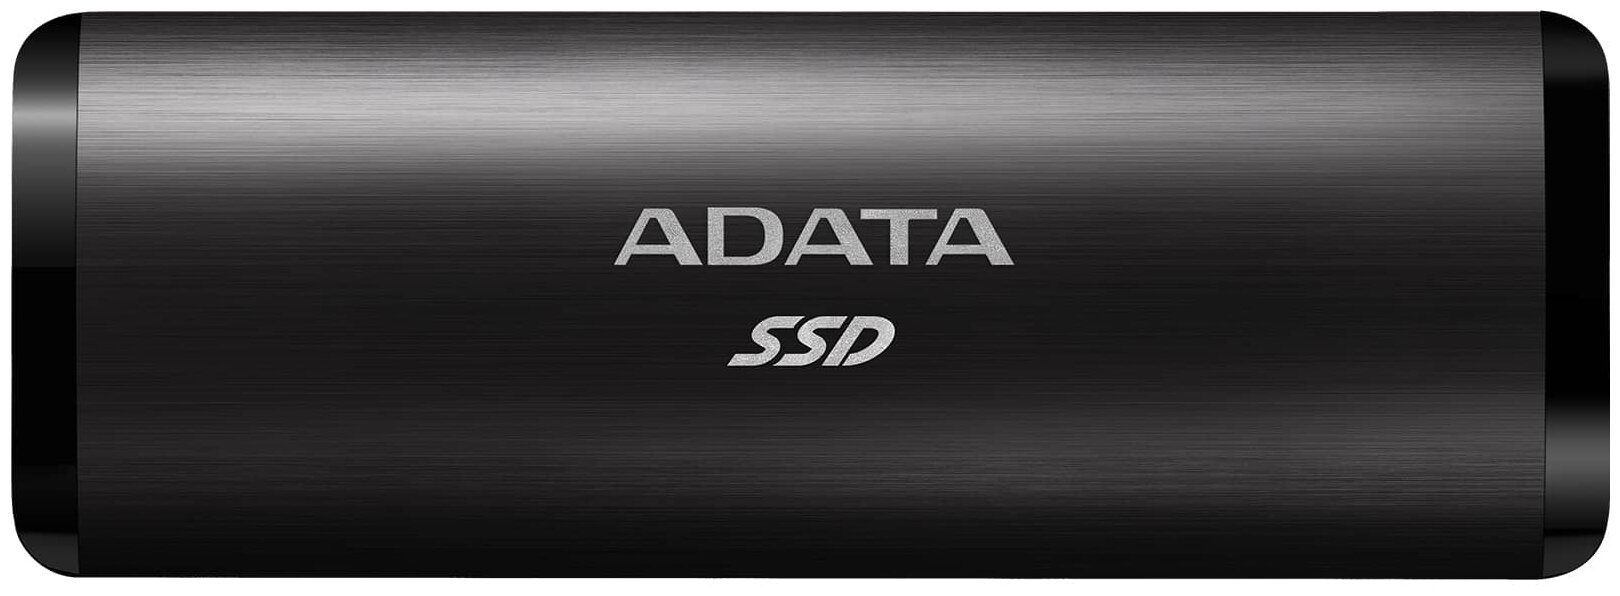 Внешний SSD накопитель A-DATA SE760, 2048GB накопитель ssd 128gb amd radeon r5 client m 2 nvme 3d tlc [r w 1800 700 mb s]